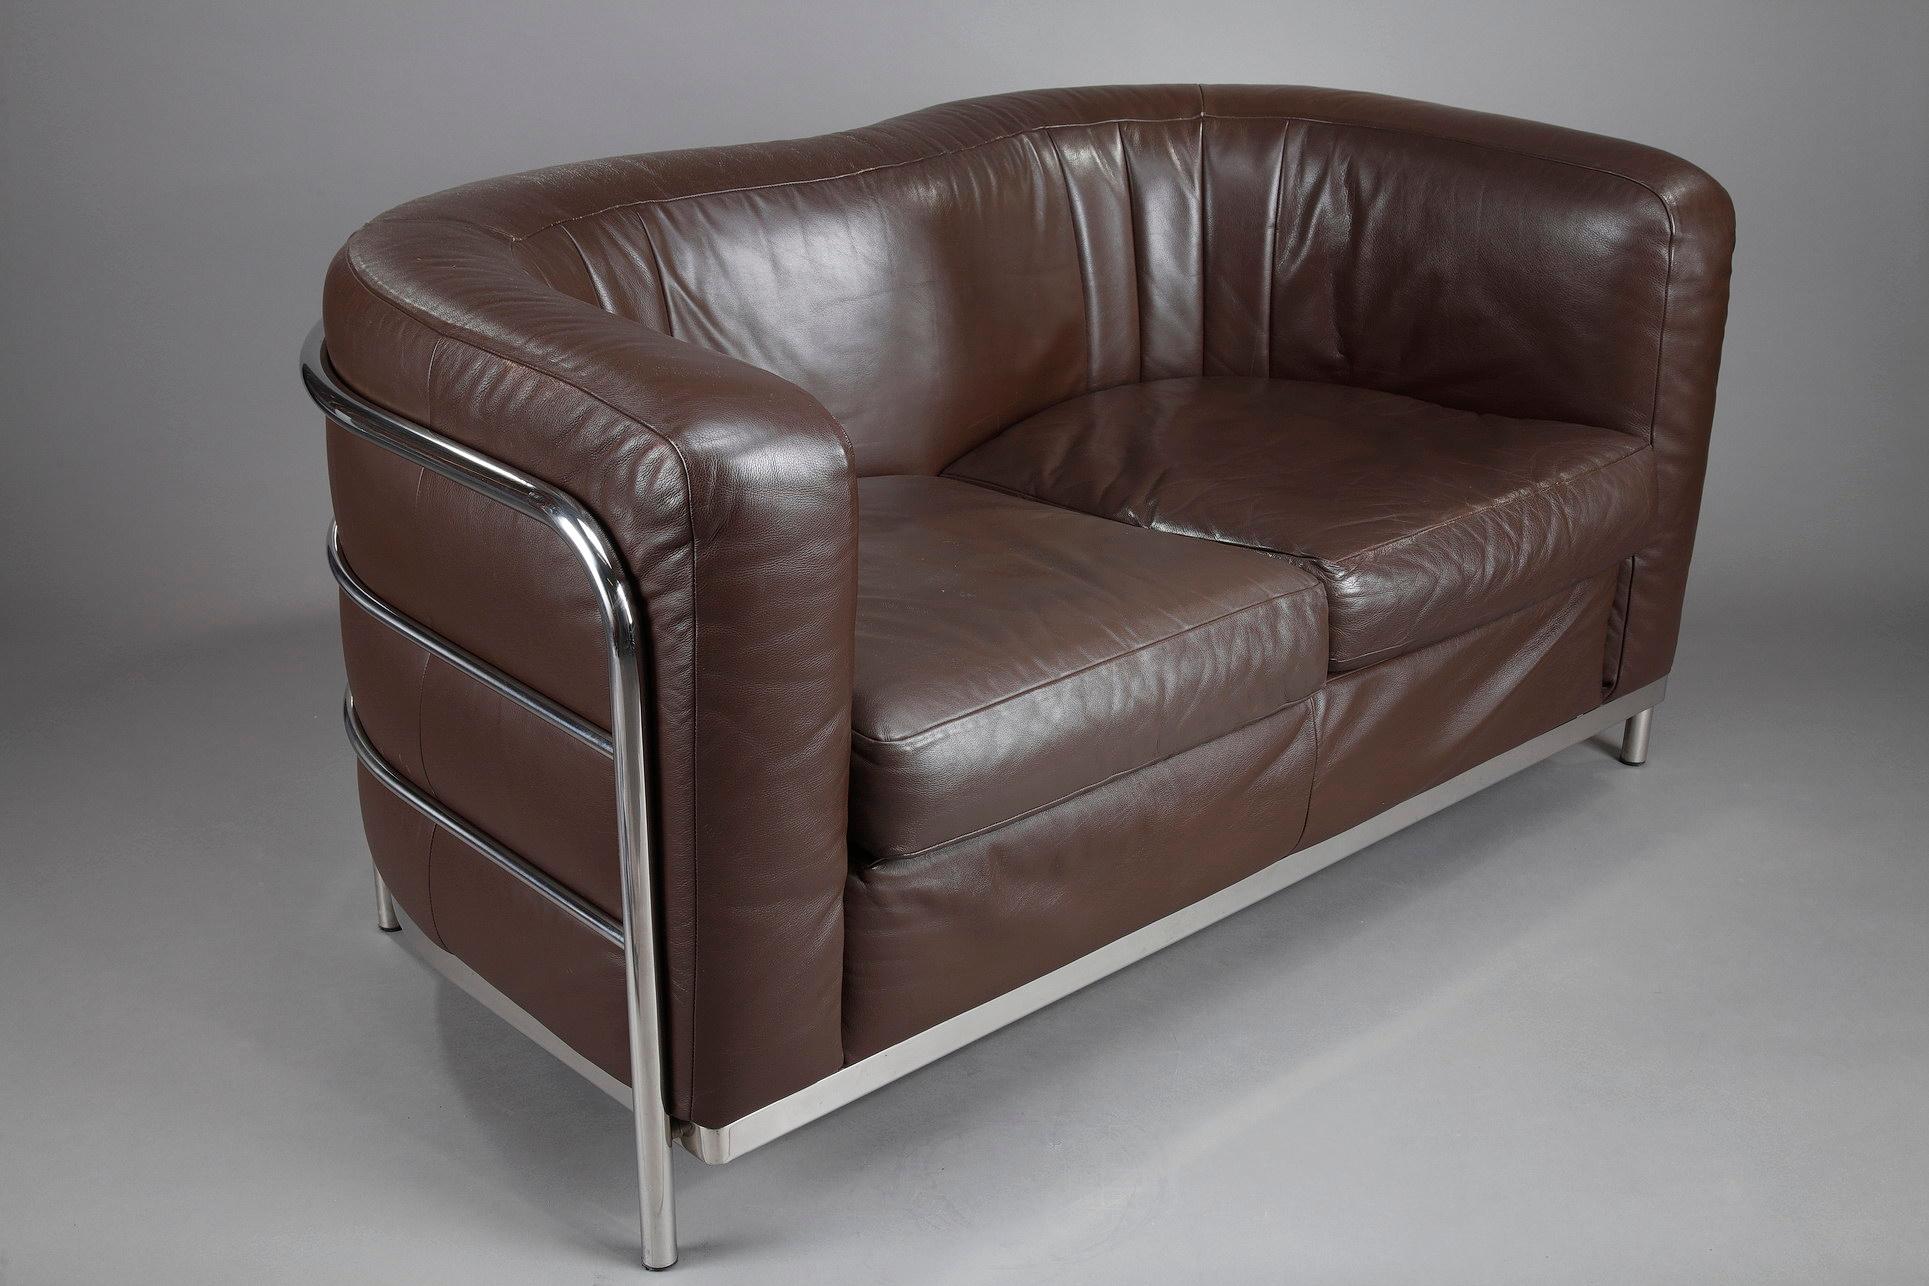 Two-Seat Sofa by Zanotta, 